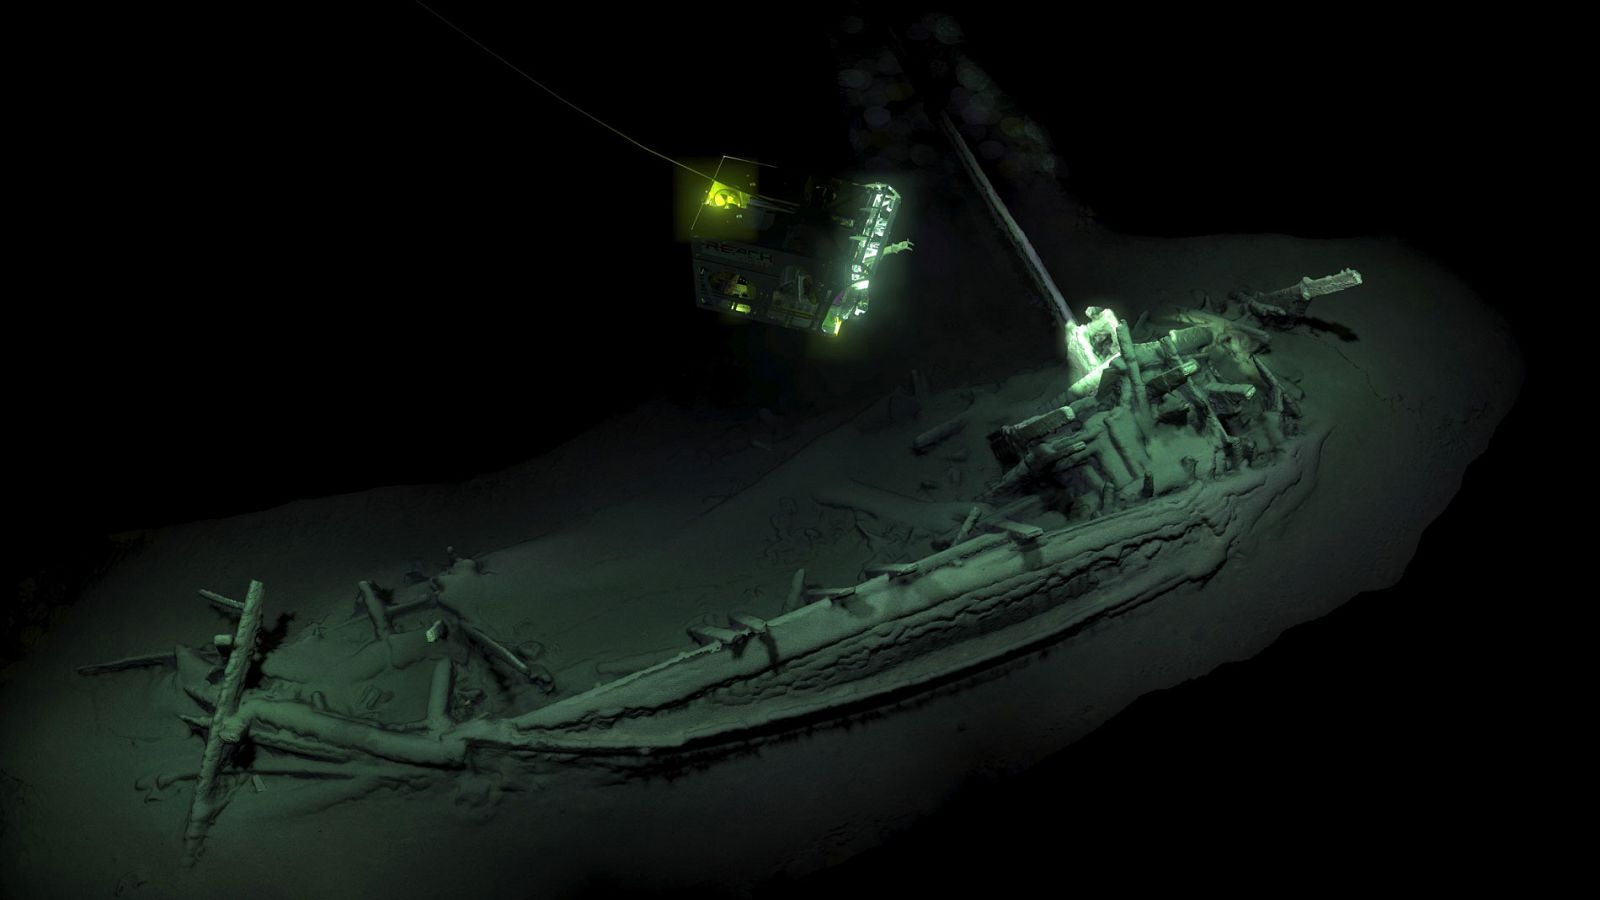 Un barco mercante griego que naufragó hace más de 2.400 años, posiblemente la embarcación intacta más antigua del mundo, ha sido hallado en las costas búlgaras, ha informado el equipo anglo-búlgaro encargado de este proyecto.Los expertos del llamado 